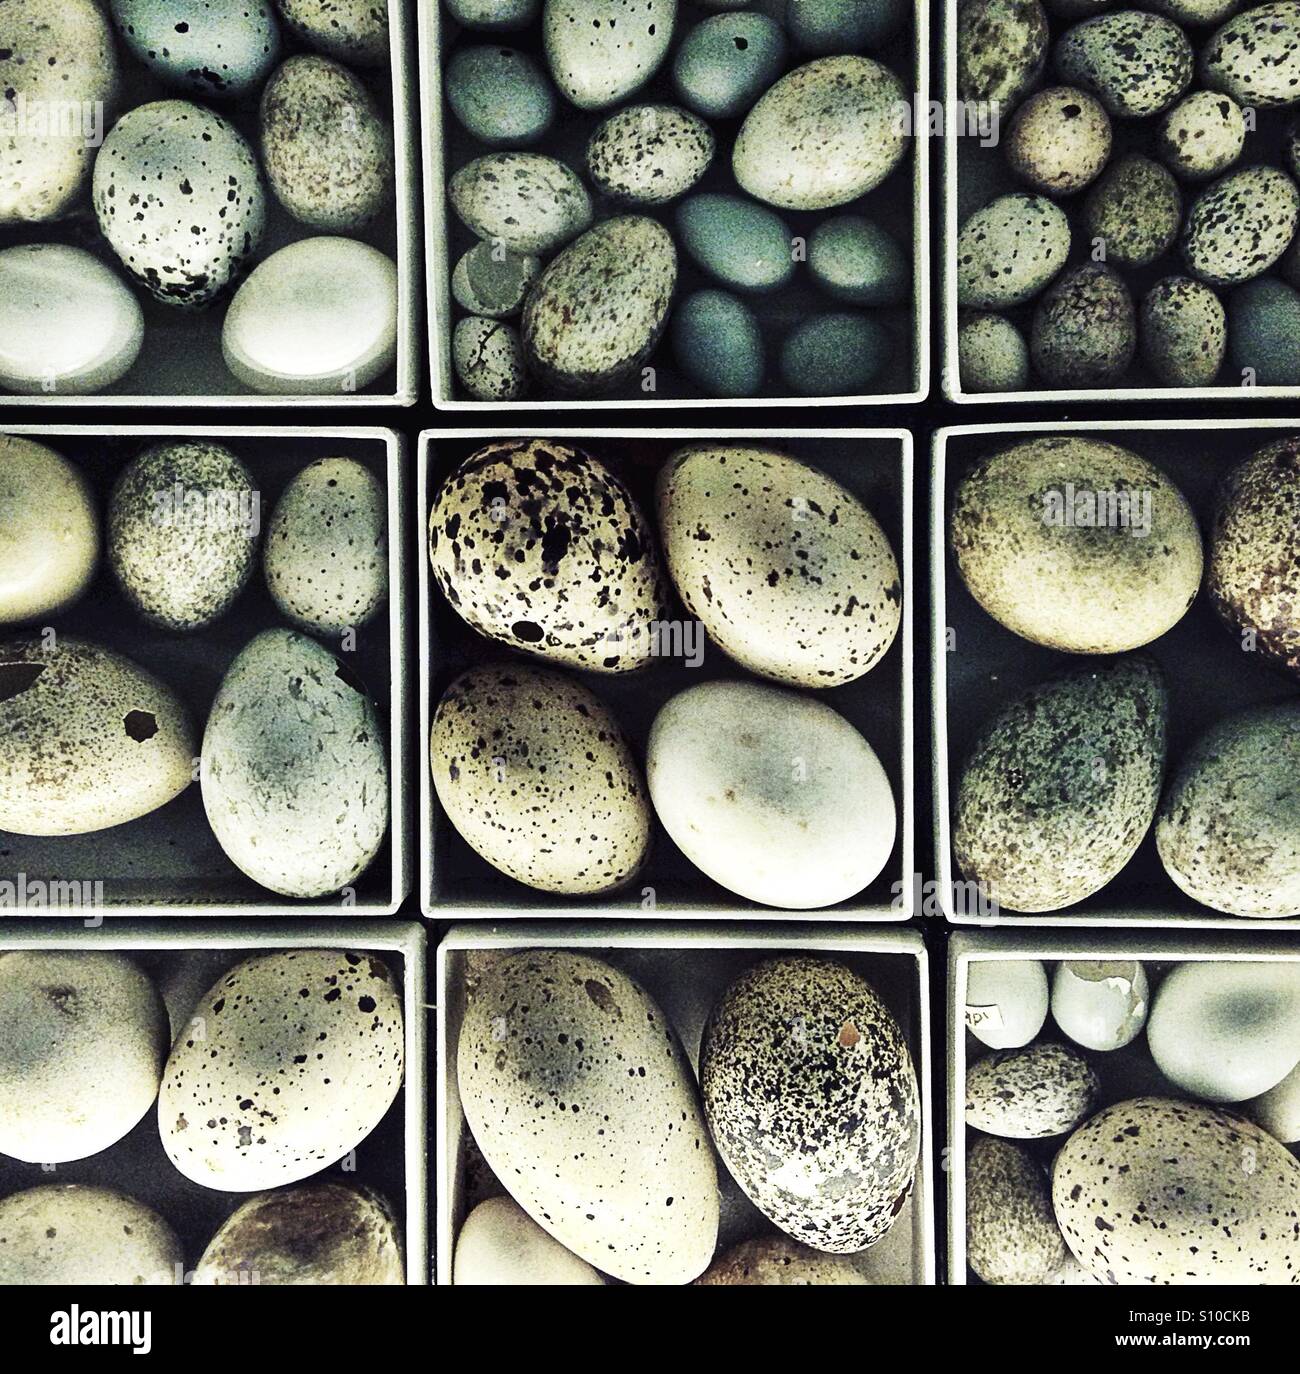 Antique birds egg collection Stock Photo